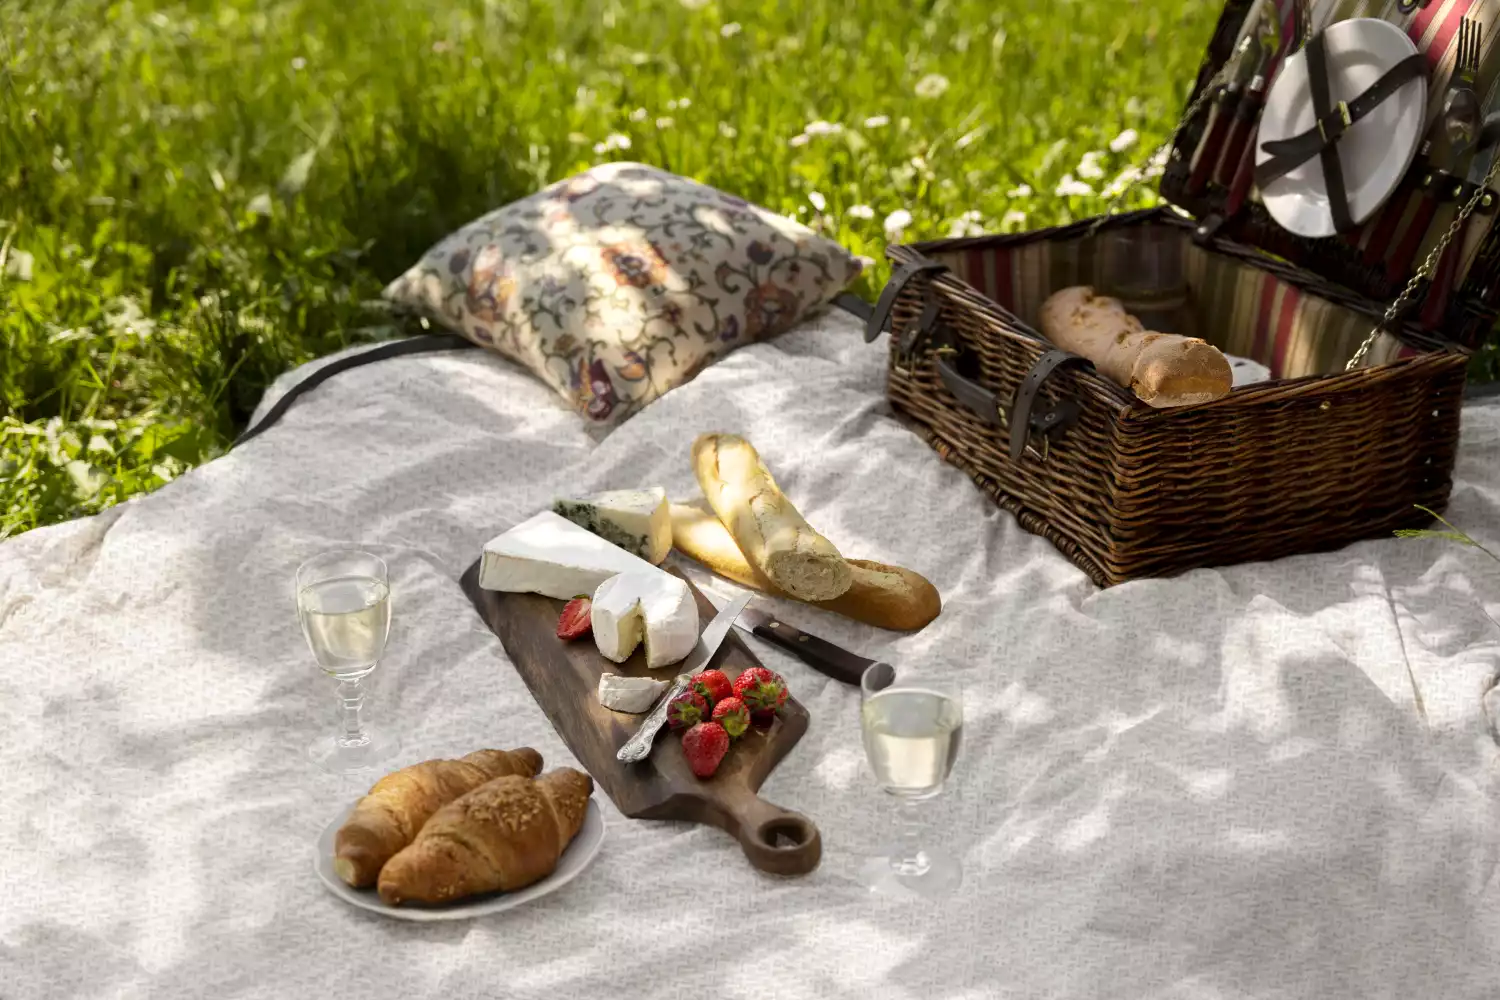 aesthetic picnic blanket